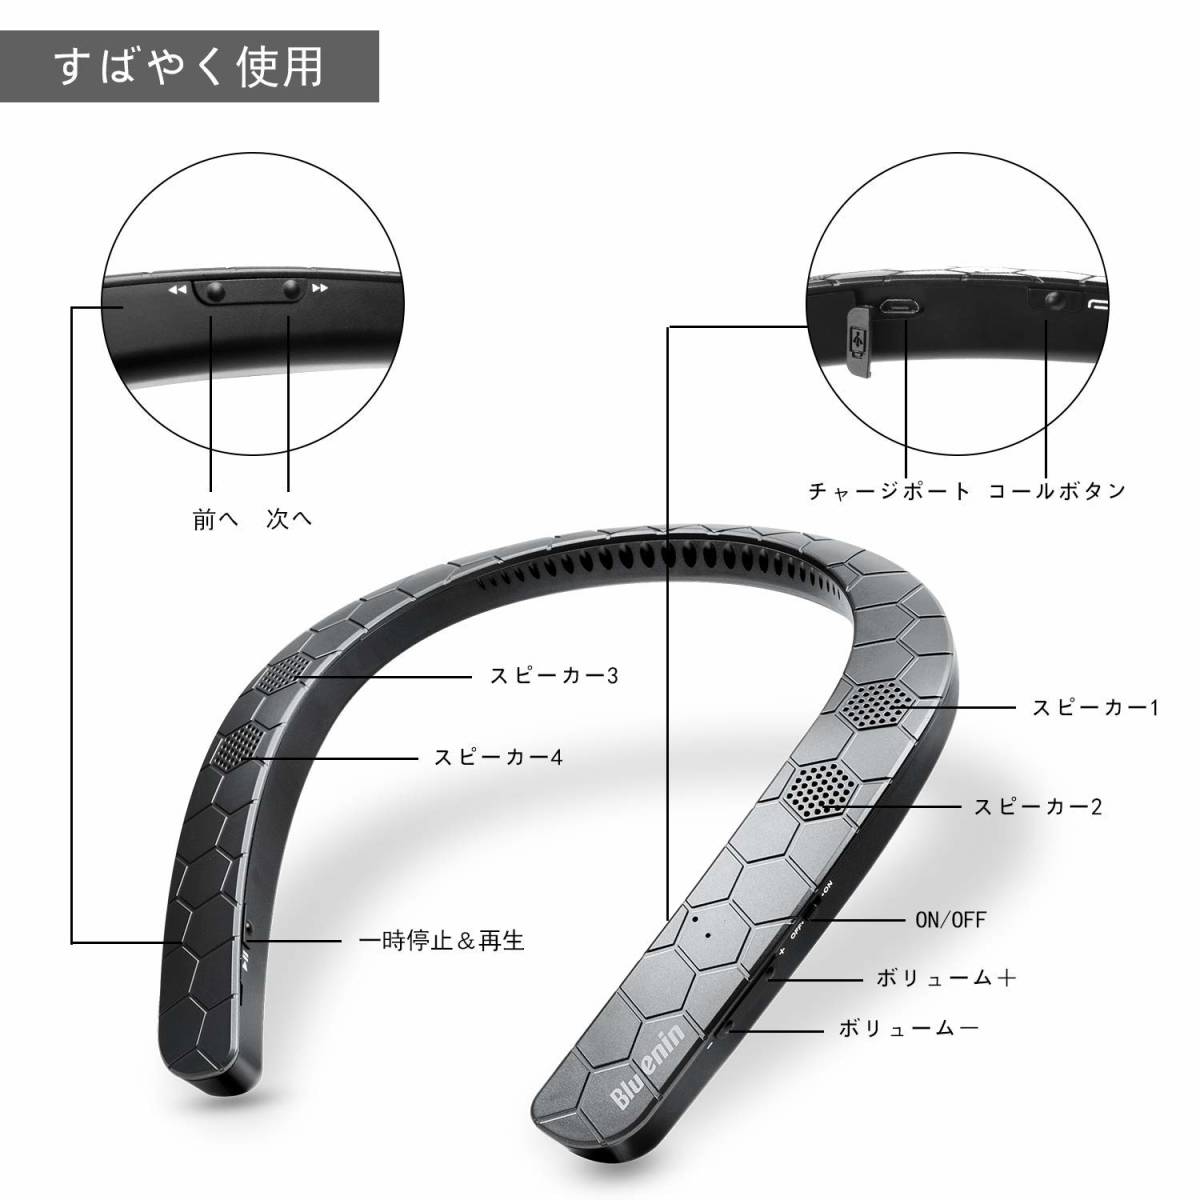  原文:ネックバンドスピーカー ワイヤレス 首 かけ スピーカー ウェアラブル Bluetooth4.1 3Dサウンド ハンズフリー ステレオヘッドセット (黒)